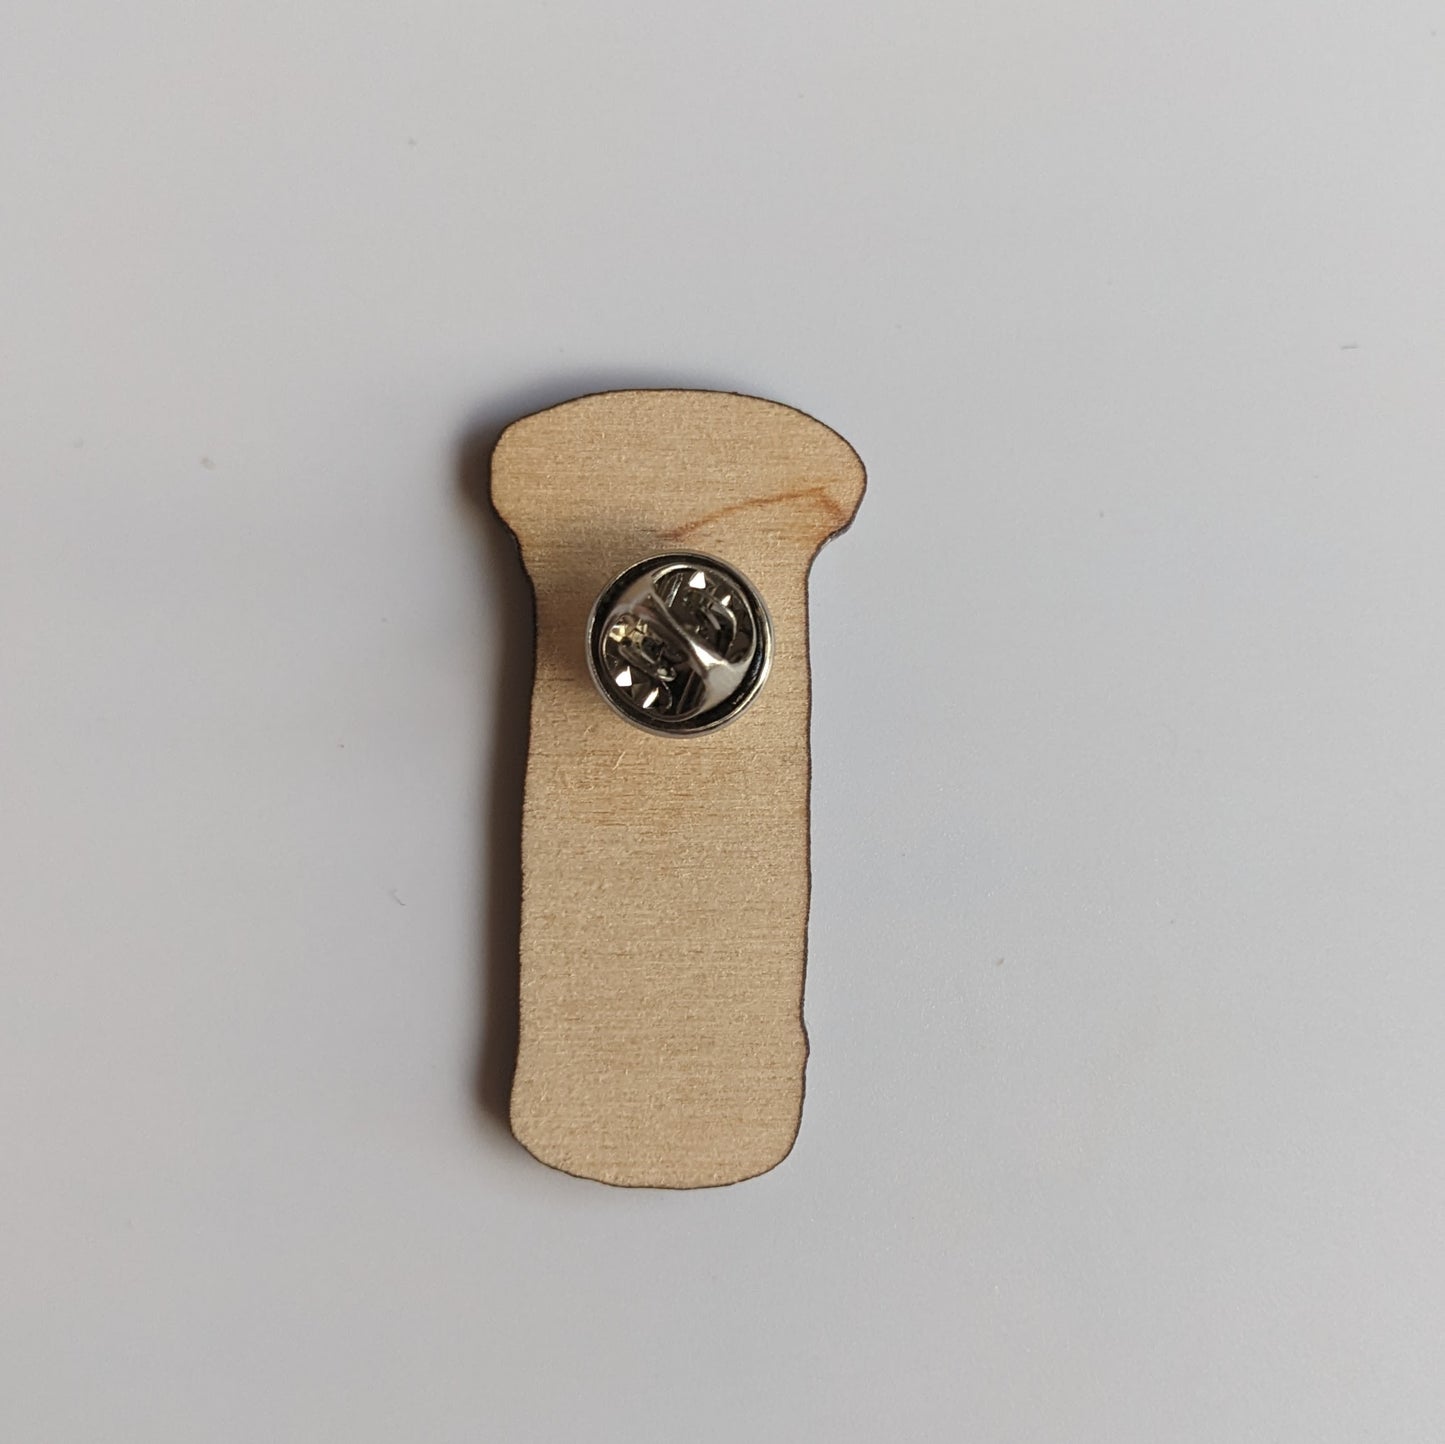 British "Post Box" Wooden Pin Badge